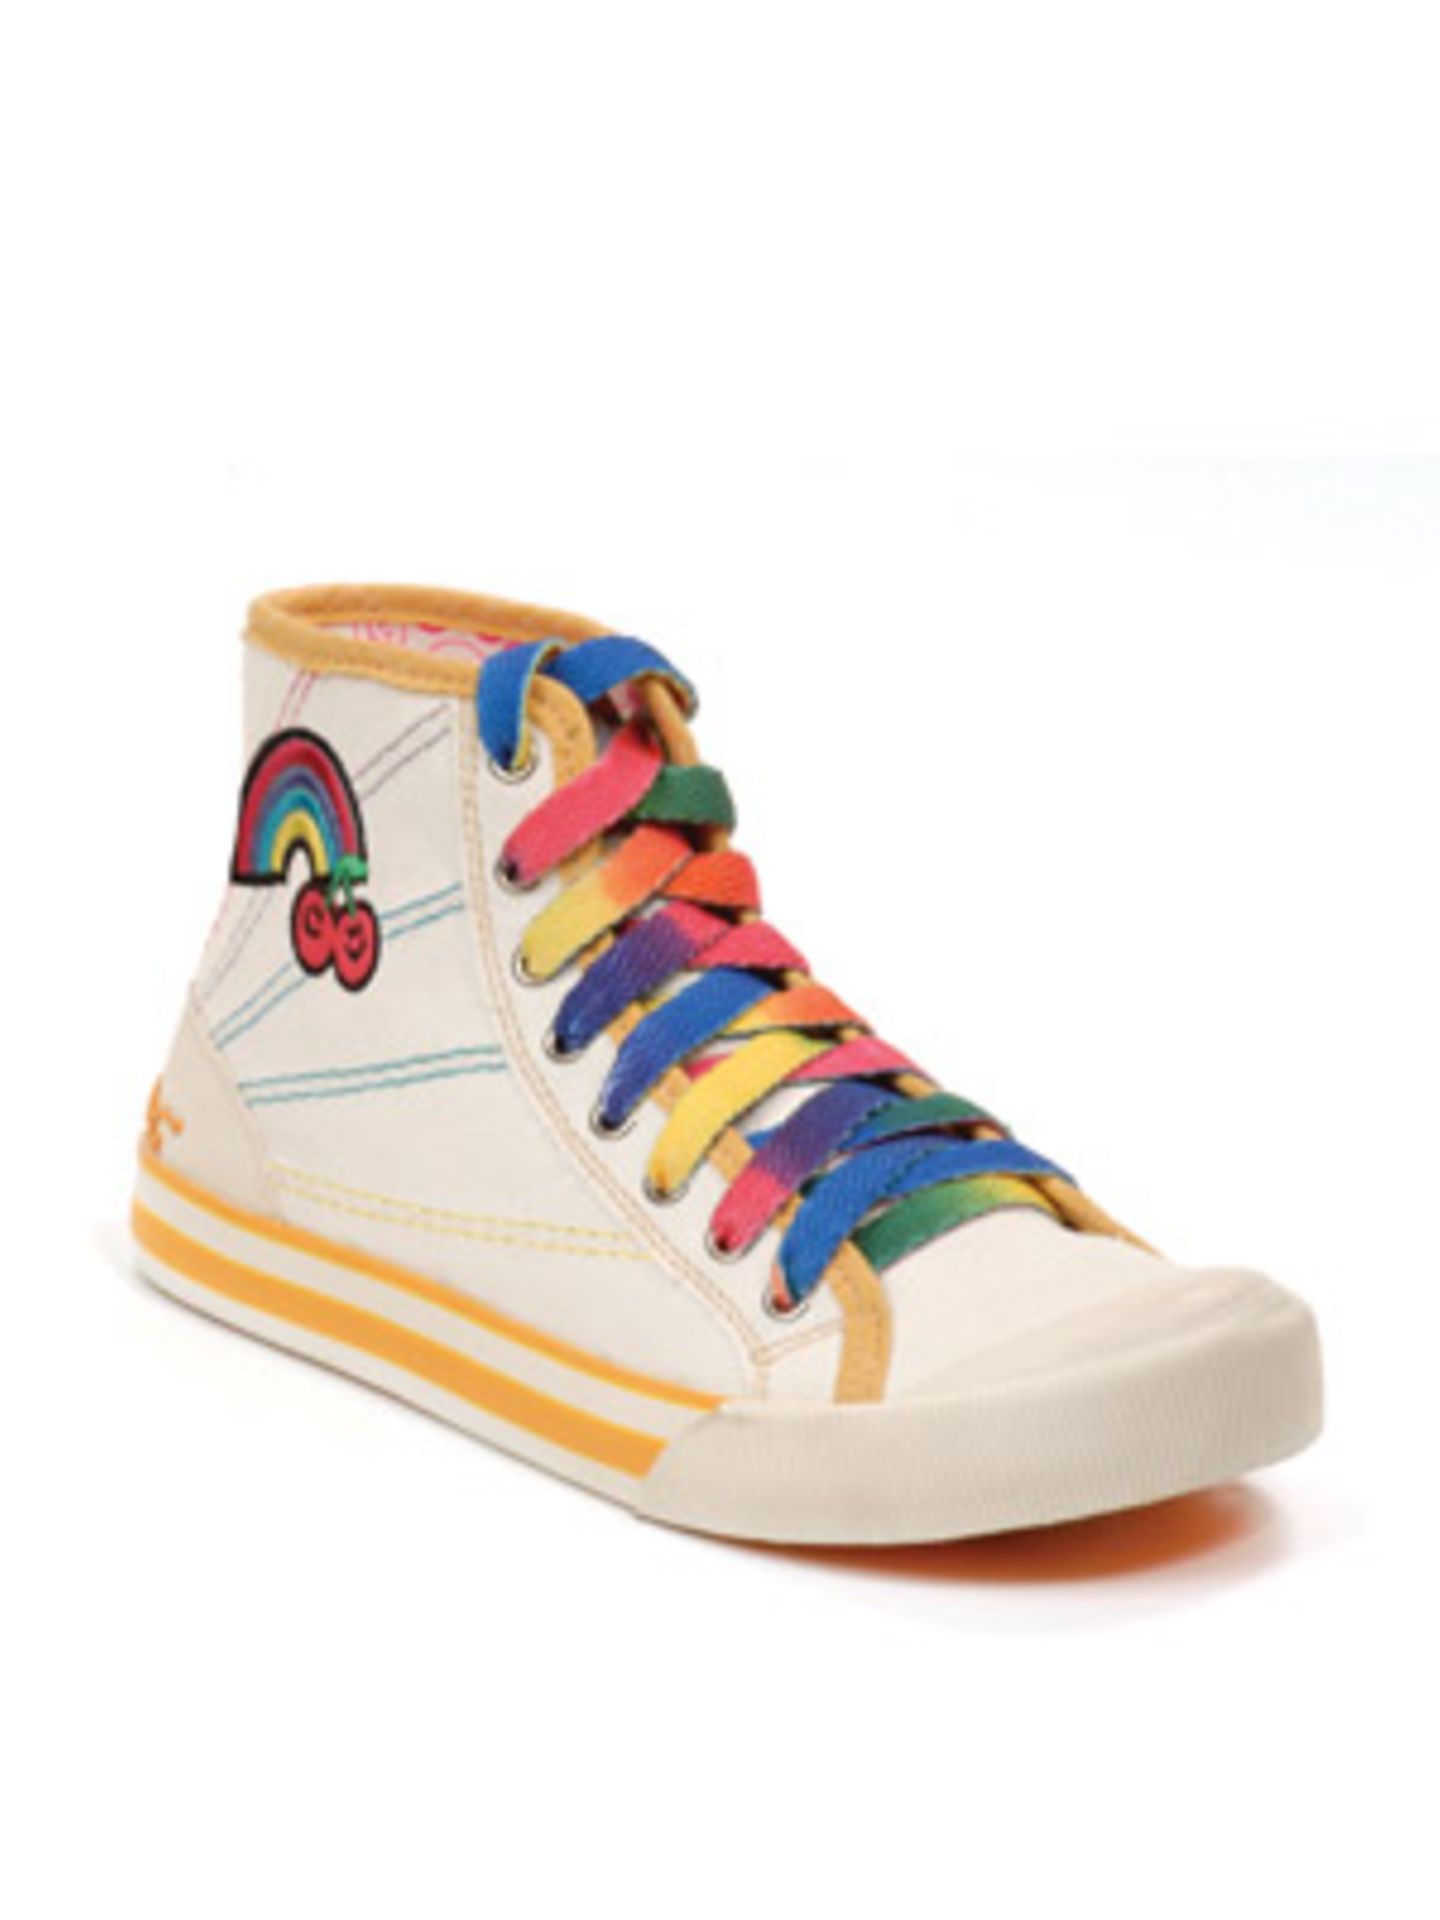 Knöchelhoher Sneaker mit Schnürsenkeln und Stickerei in Regenbogenfarben von Rocket Dog, um 45 Euro.